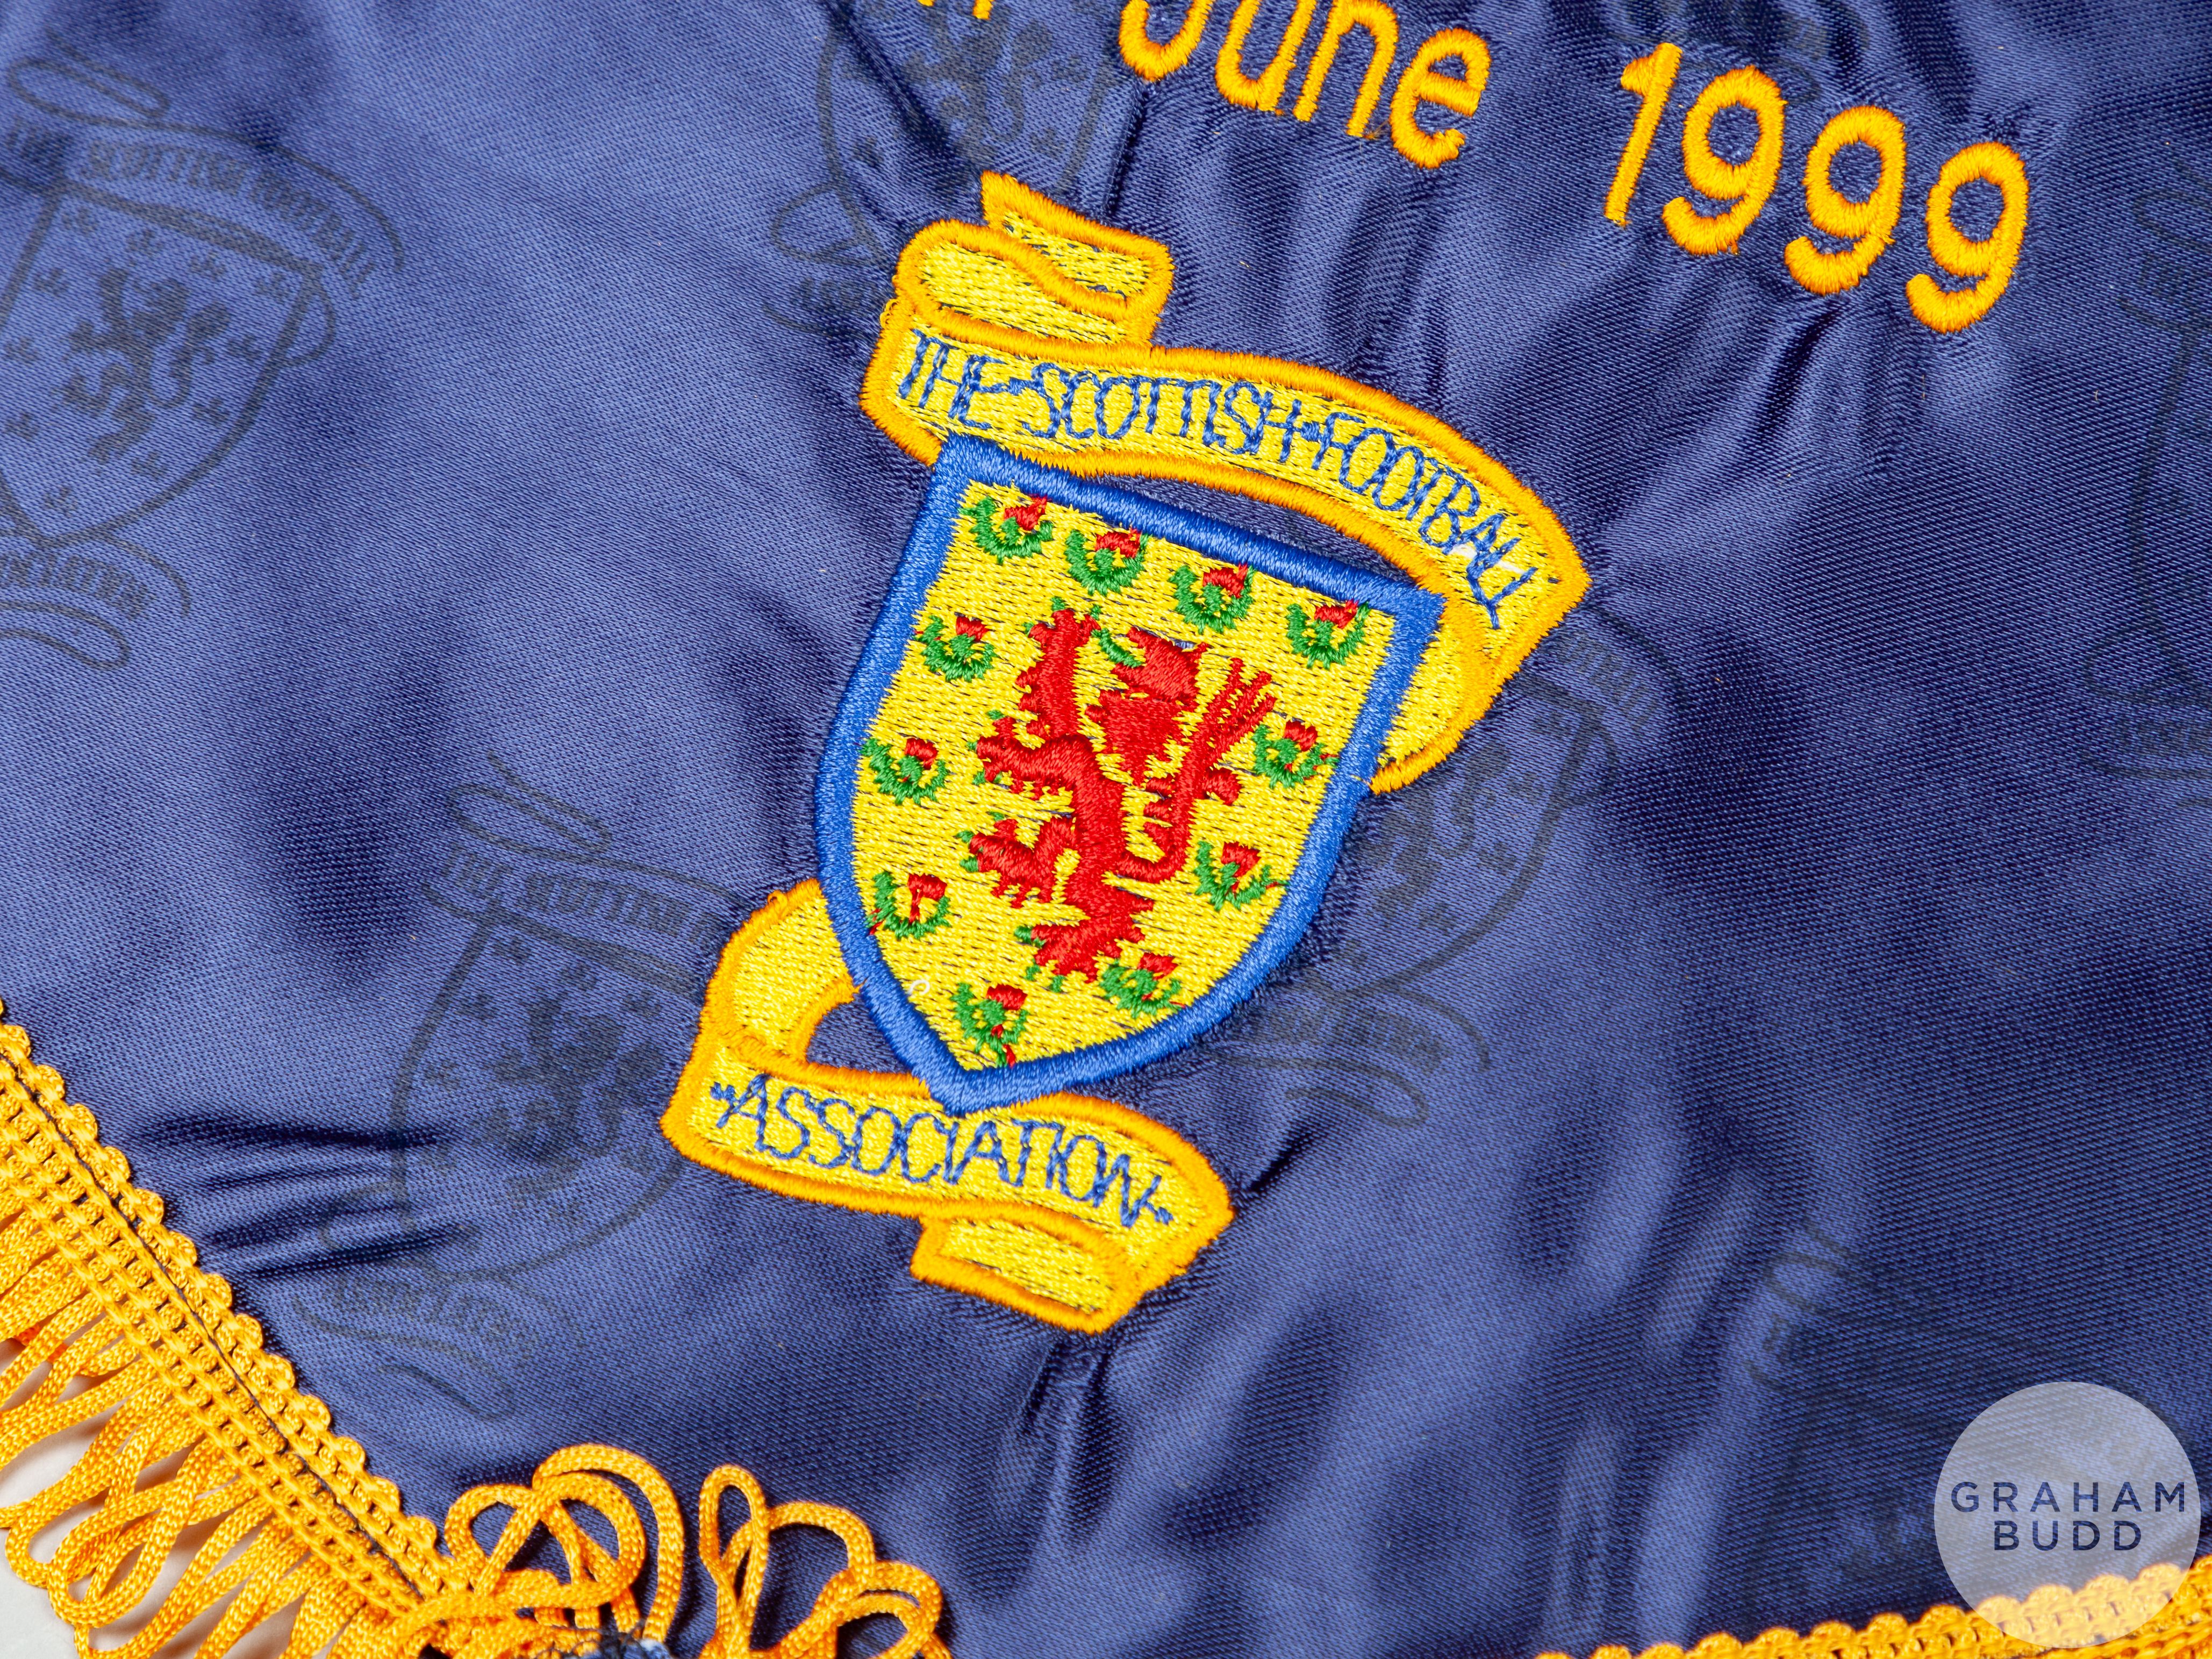 Alex Miller four official Scotland International match pennants, 1999 - Image 2 of 4